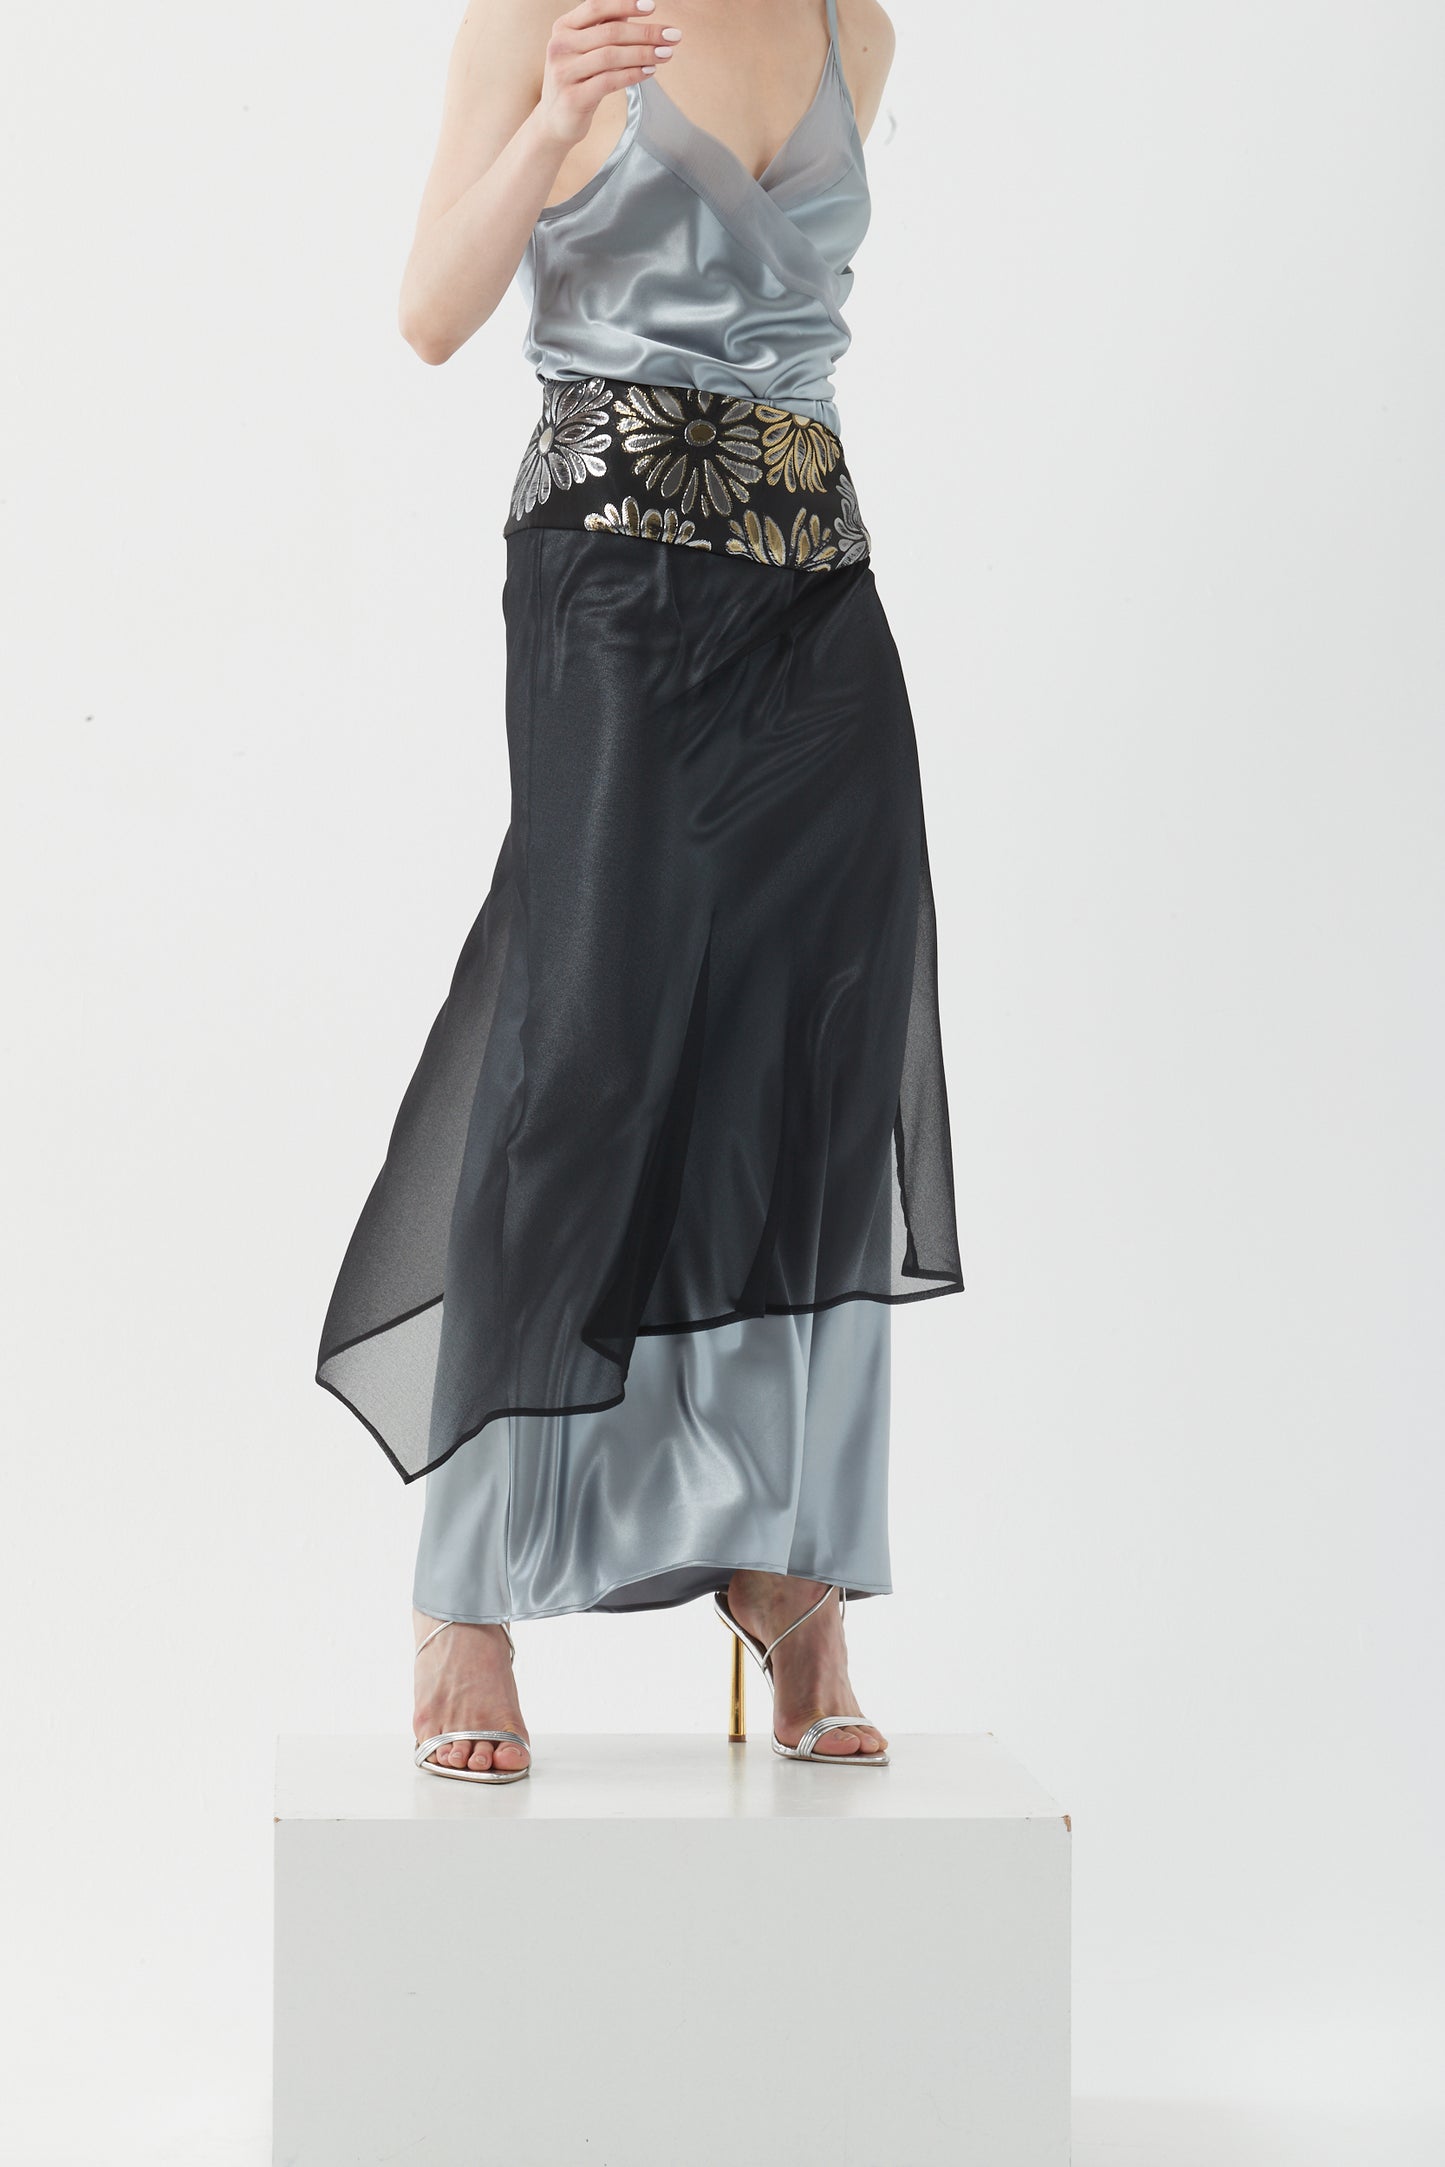 Kimono Skirt